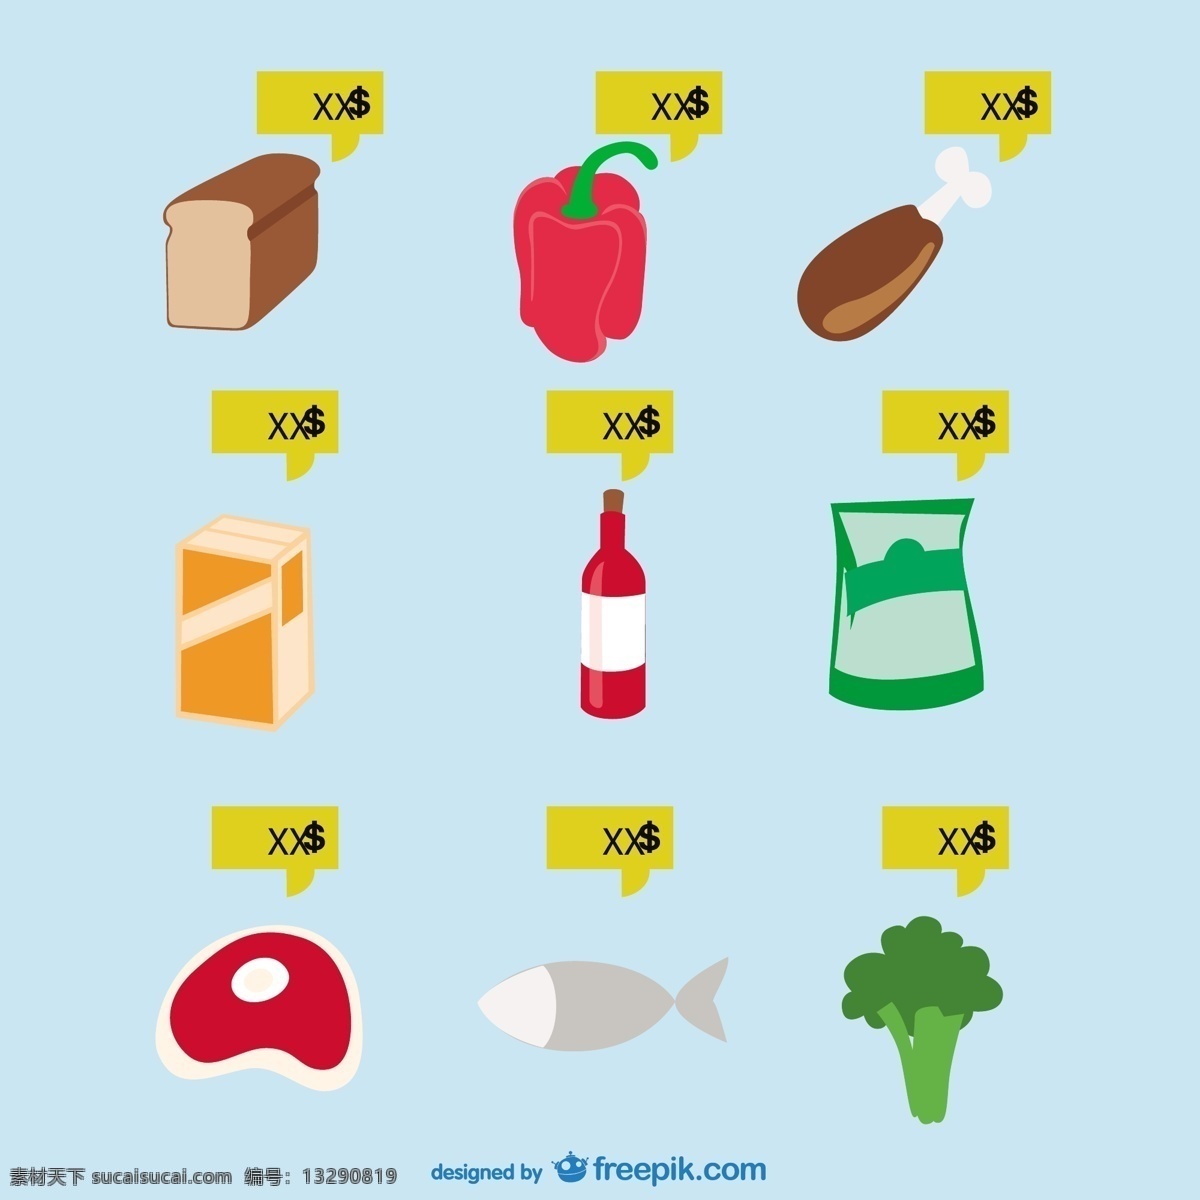 超市食品载体 食品 图标 鱼 平面 蔬菜 商店 有机 肉类 超市 平面设计 食品图标 产品 平面图标 符号 有机食品 灰色